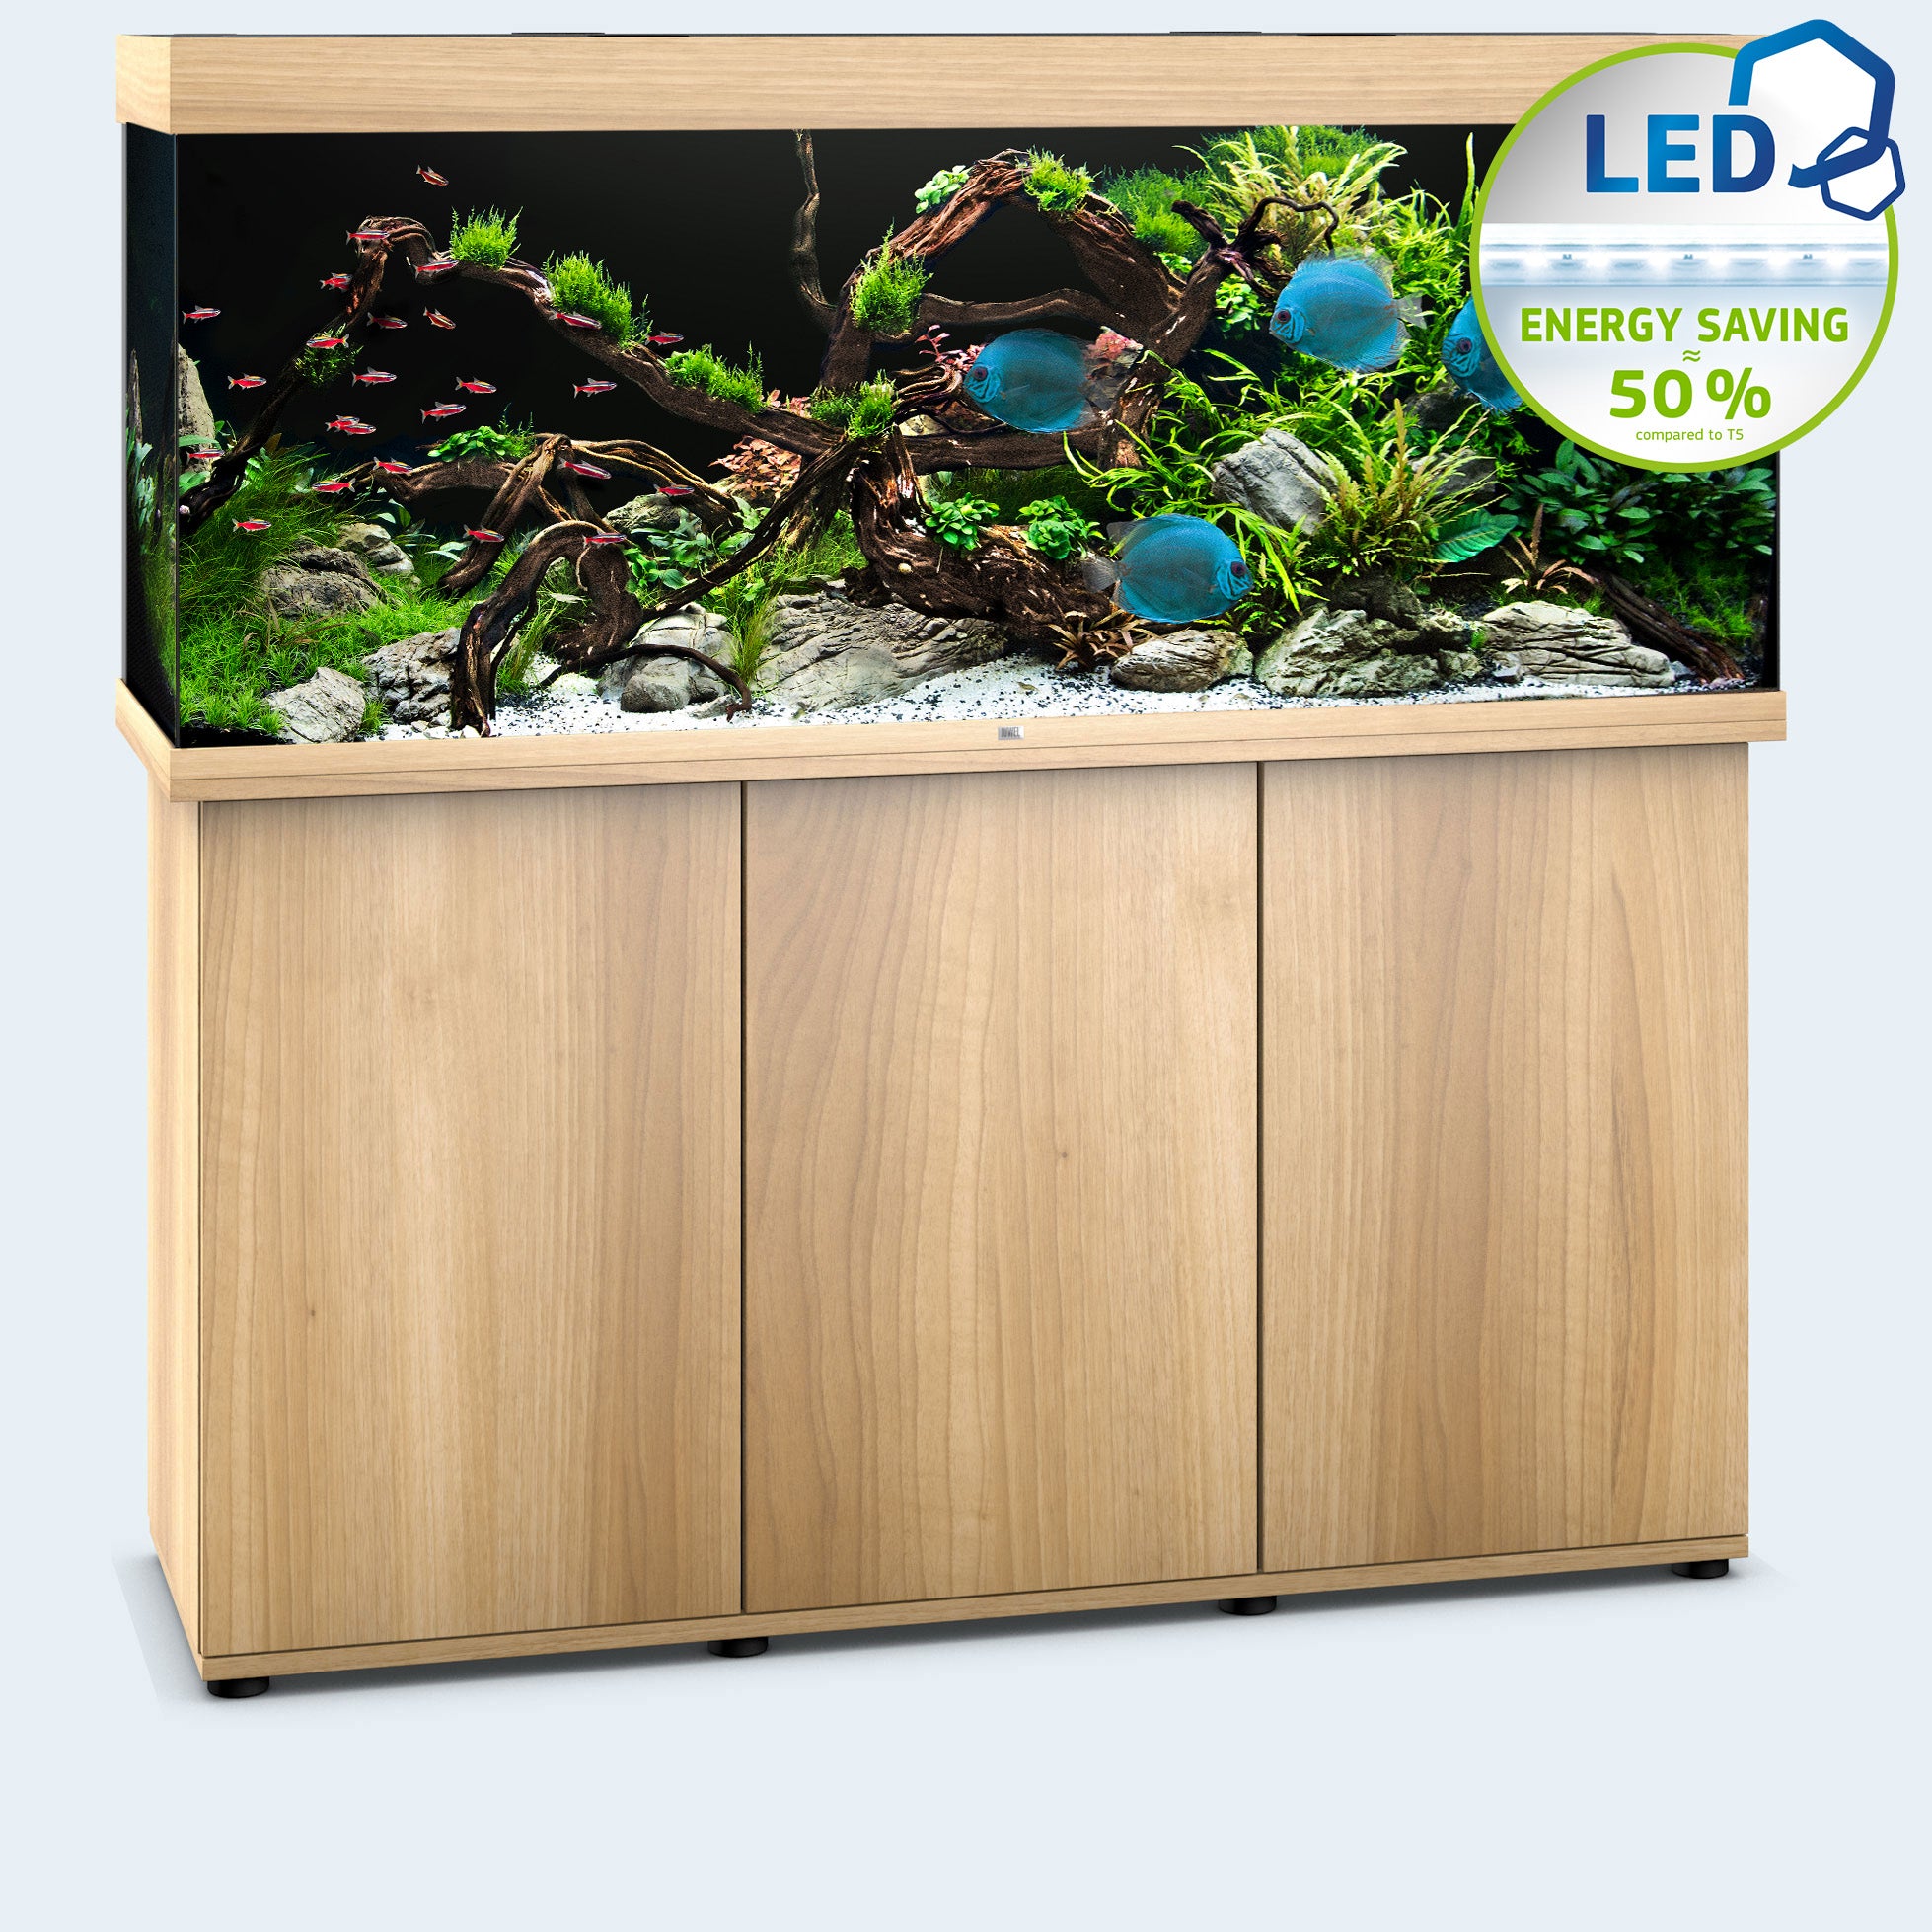 Juwel Rio 450 Aquarium and Cabinet